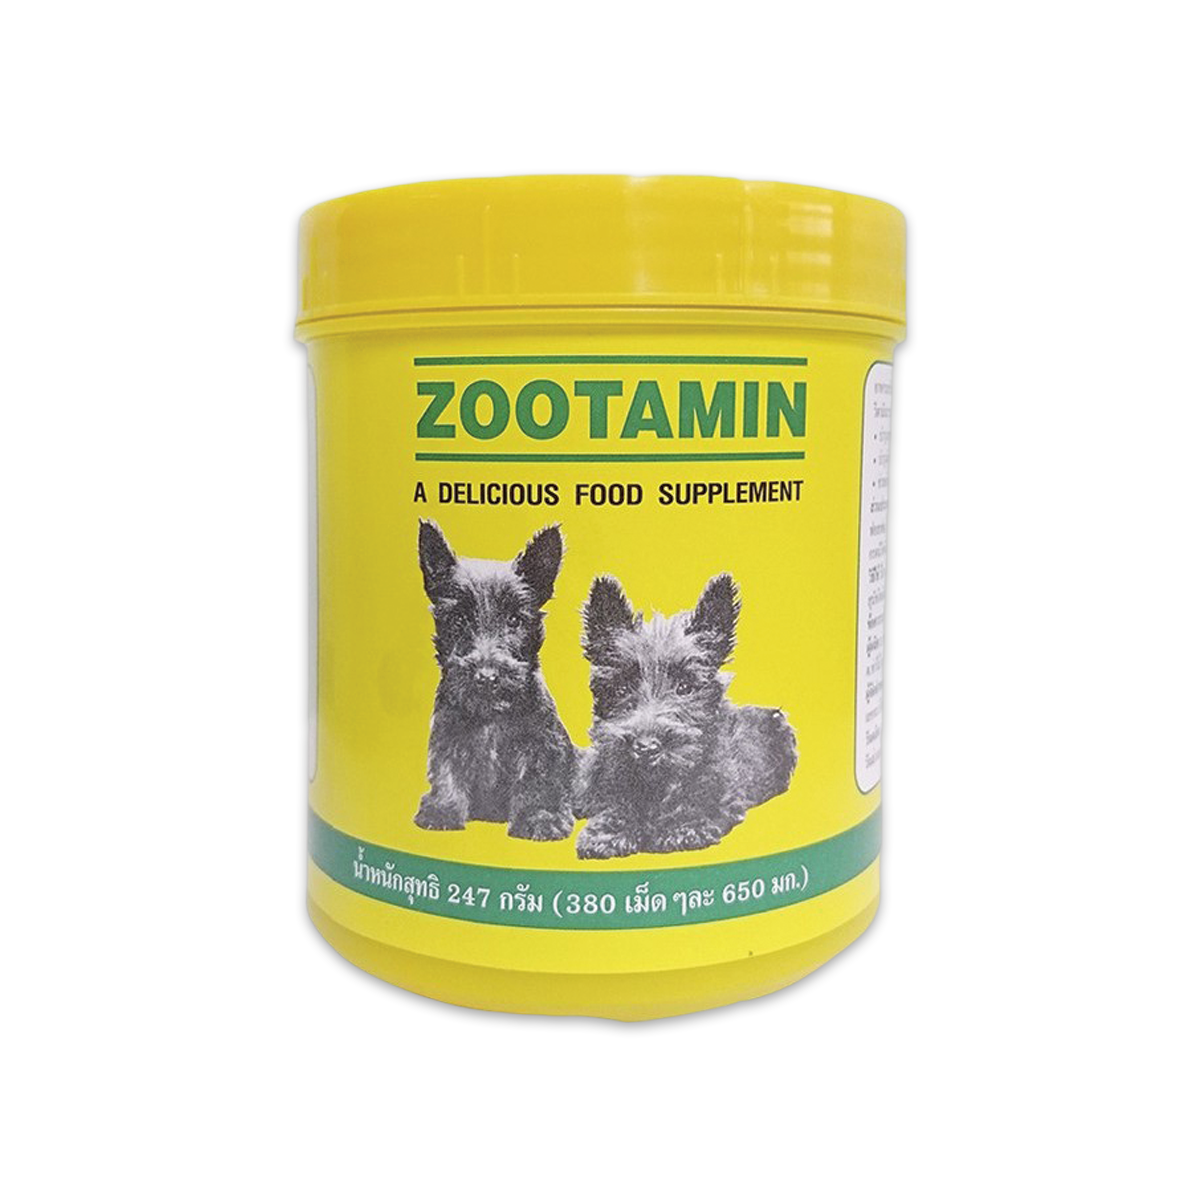 Zootamin Food supplement ซูตามิน อาหารเสริมวิตามิน จำนวน 380 เม็ด